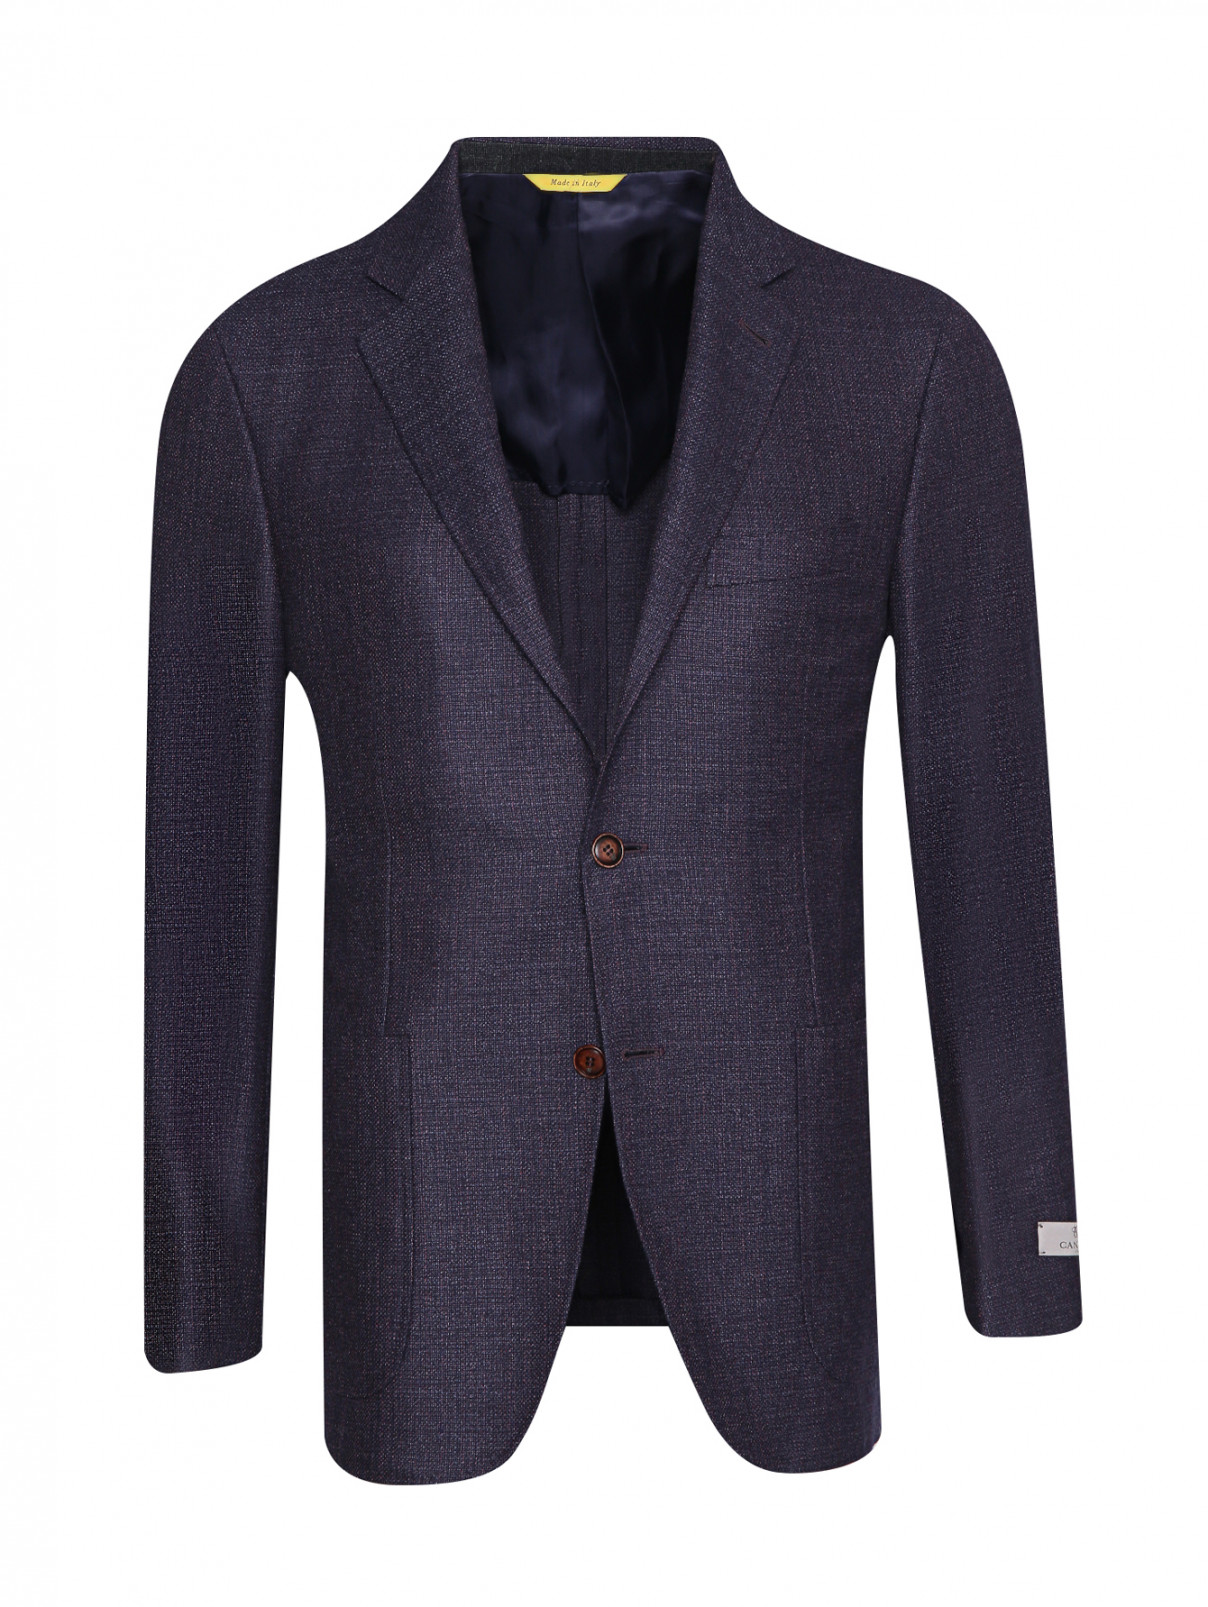 Пиджак из шерсти с карманами Canali  –  Общий вид  – Цвет:  Синий